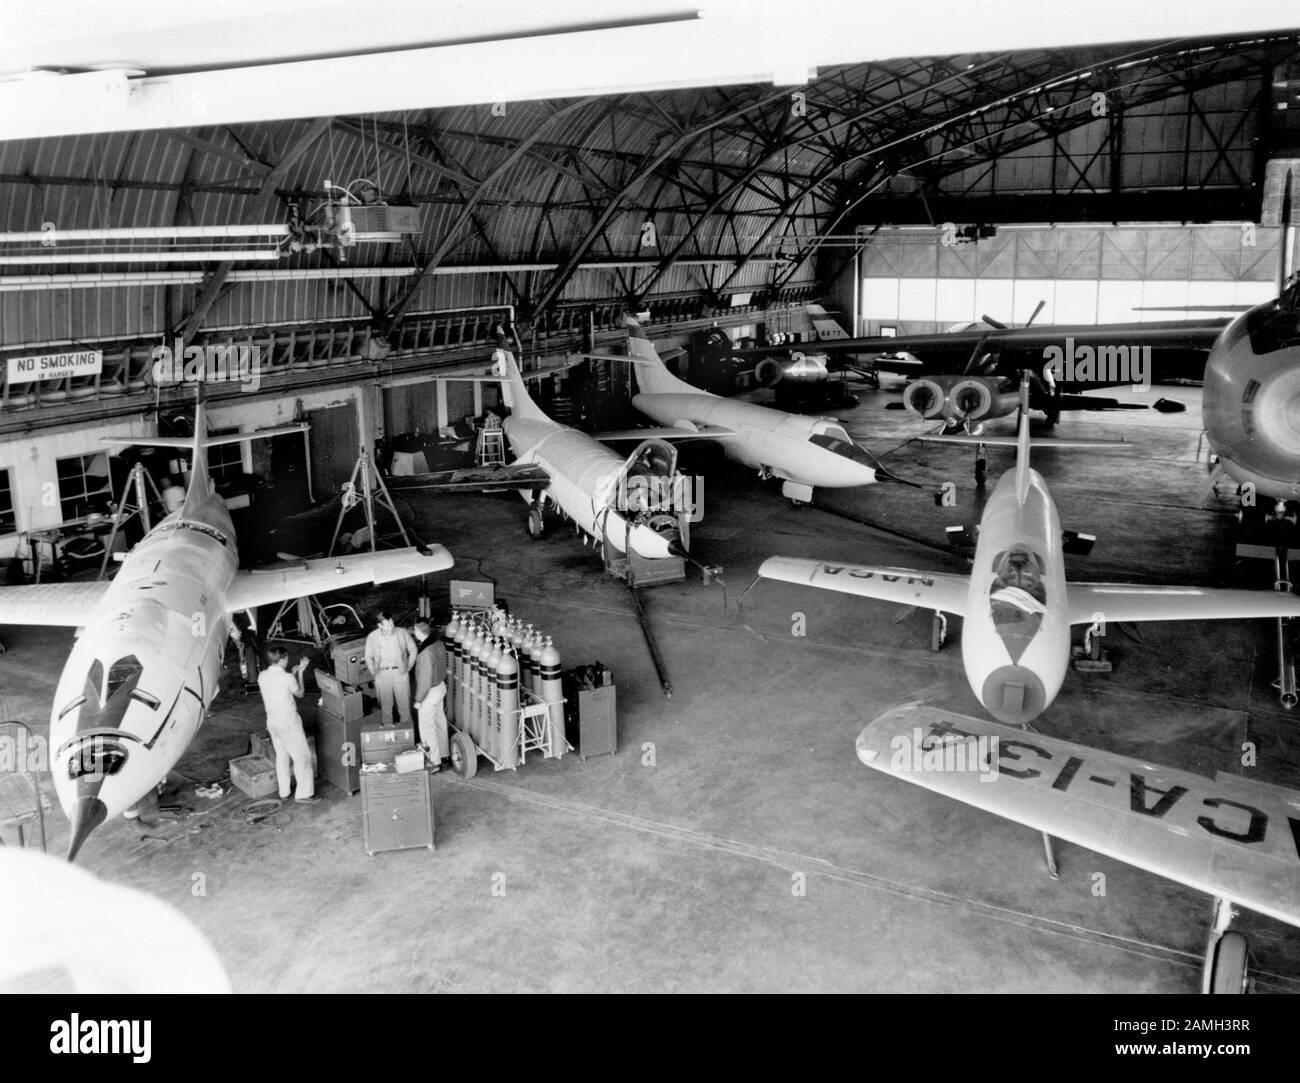 Velivoli NACA ad un hangar alla base del sud della base dell'aeronautica di Edwards: Tre D-558-2s, D-558-1 ed un B-47, con le X-4 e F-51 nello sfondo, contea di Kern, California, Stati Uniti, 1953. Immagine gentilmente concessa dalla NASA. () Foto Stock